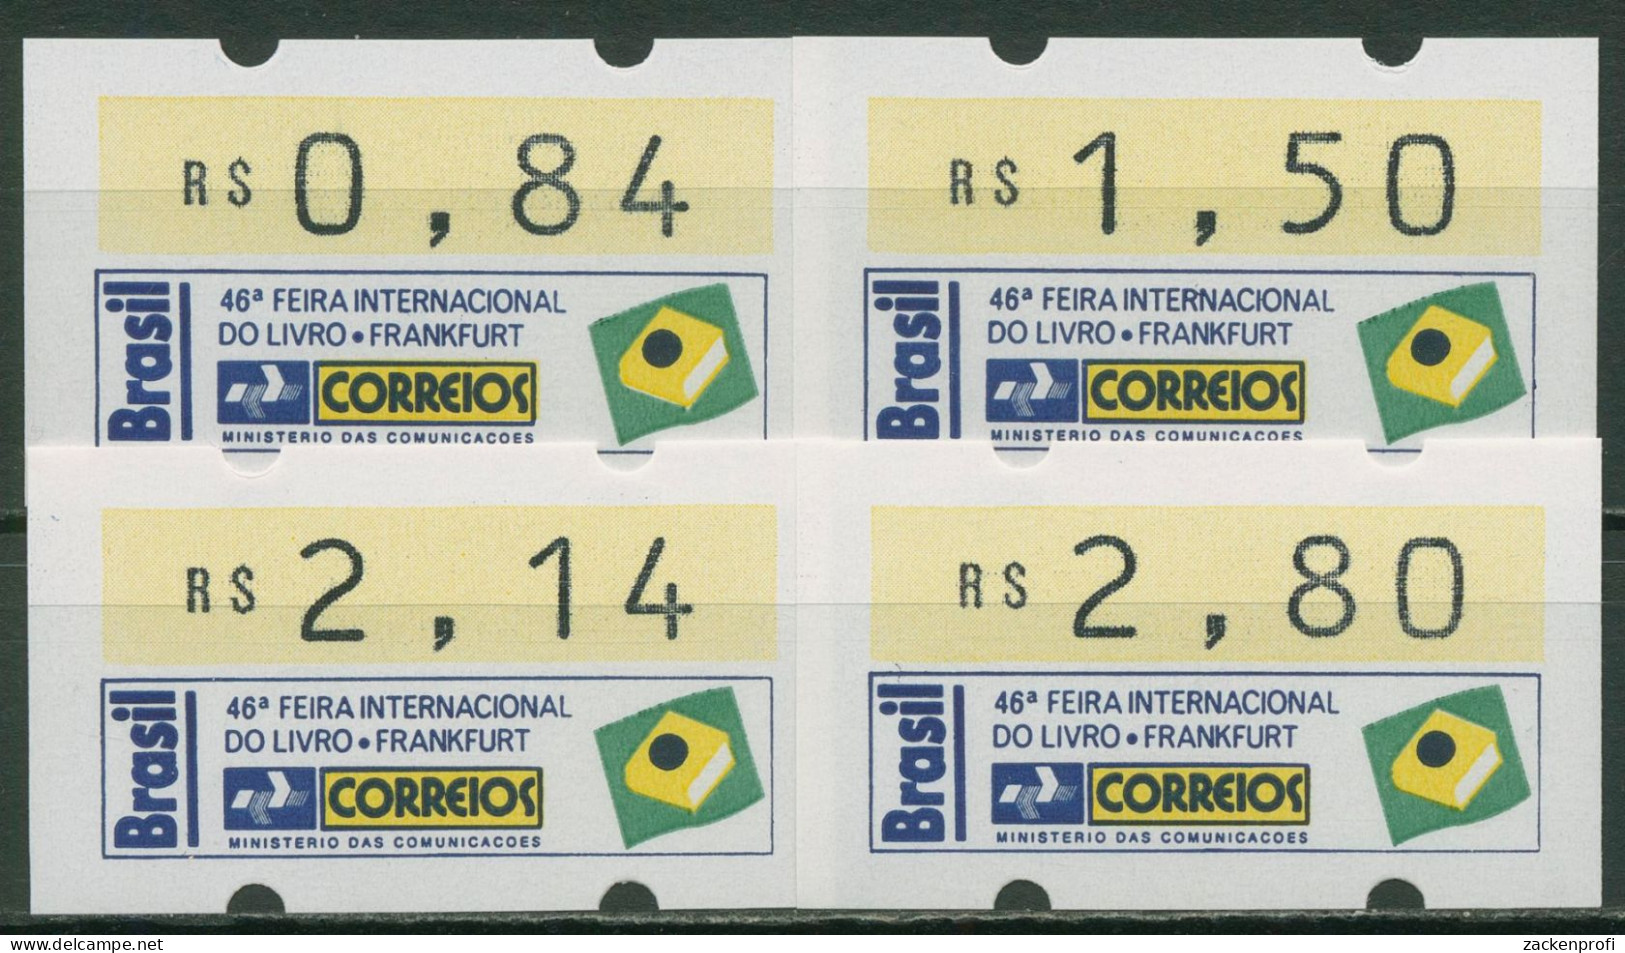 Brasilien 1994 Automatenmarken Satz 0,84/1,50/2,14/2,80 ATM 6 S1 Postfrisch - Affrancature Meccaniche/Frama